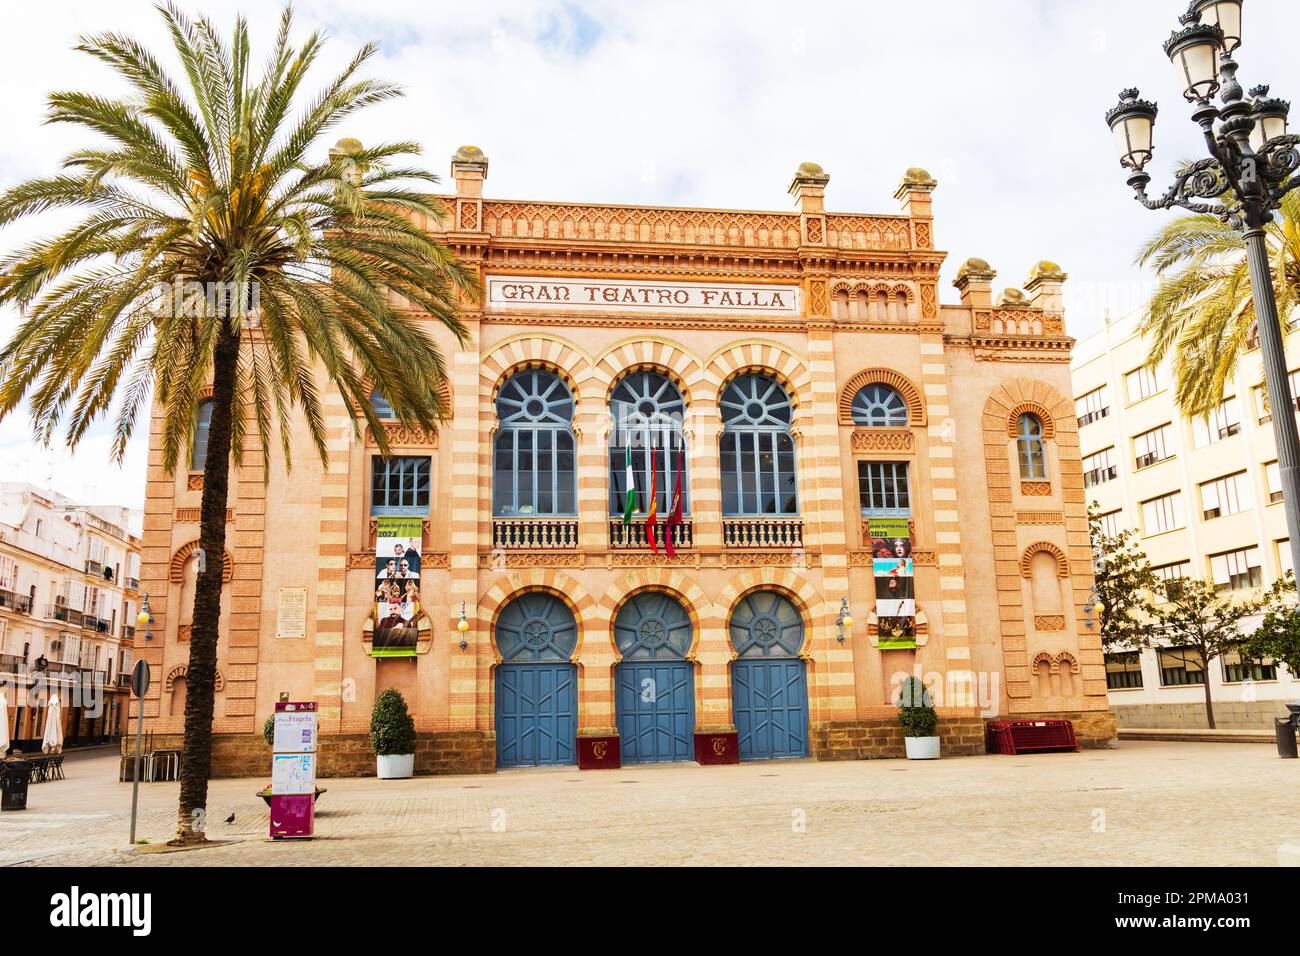 Gran Teatro Falla, Grand Theatre, plaza Fragela, Cadiz, Andalusia, Spain Stock Photo